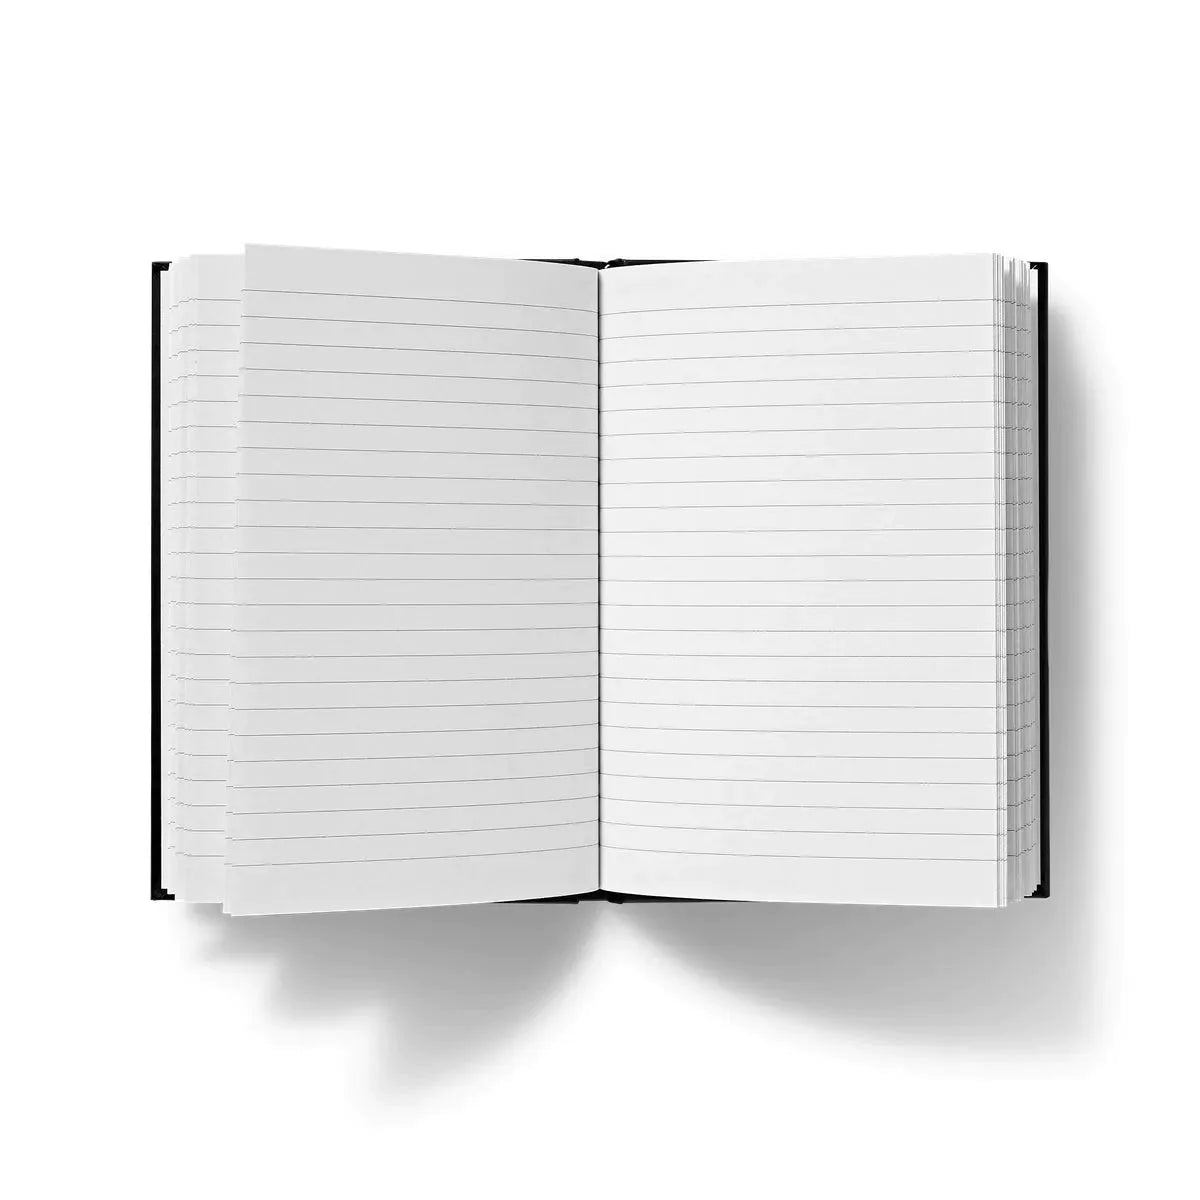 Aigles Et Chêne By Maurice Pillard Verneuil Hardback Journal - Notebooks & Notepads - Aesthetic Art